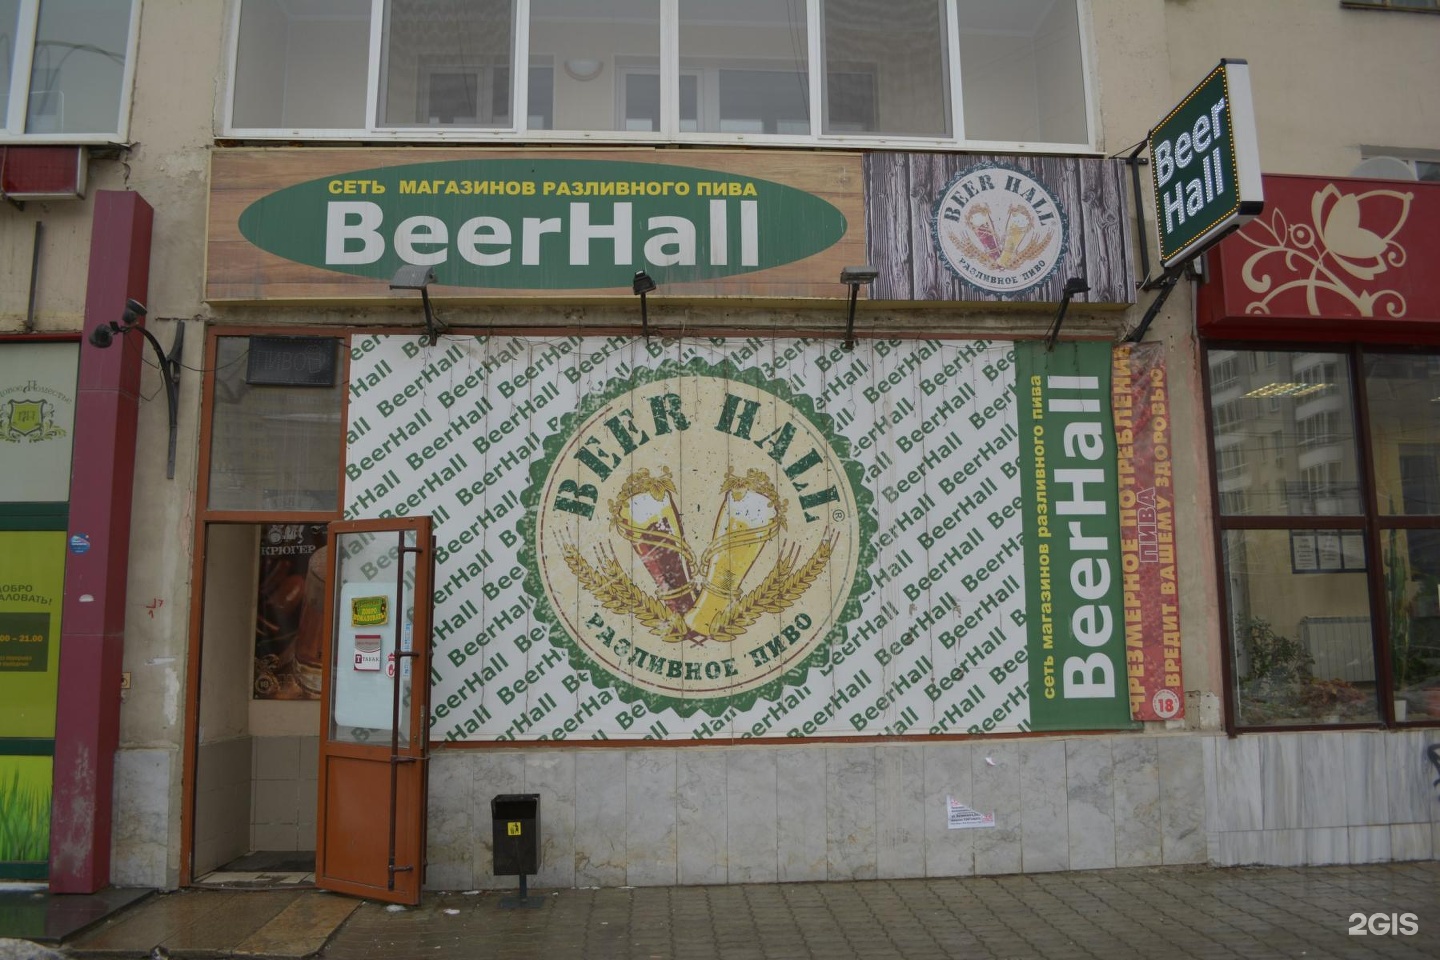 Круглосуточный пивной магазин. БИРХОЛЛ. Разливное пиво Зеленоград. Пиво Екатеринбург местное.